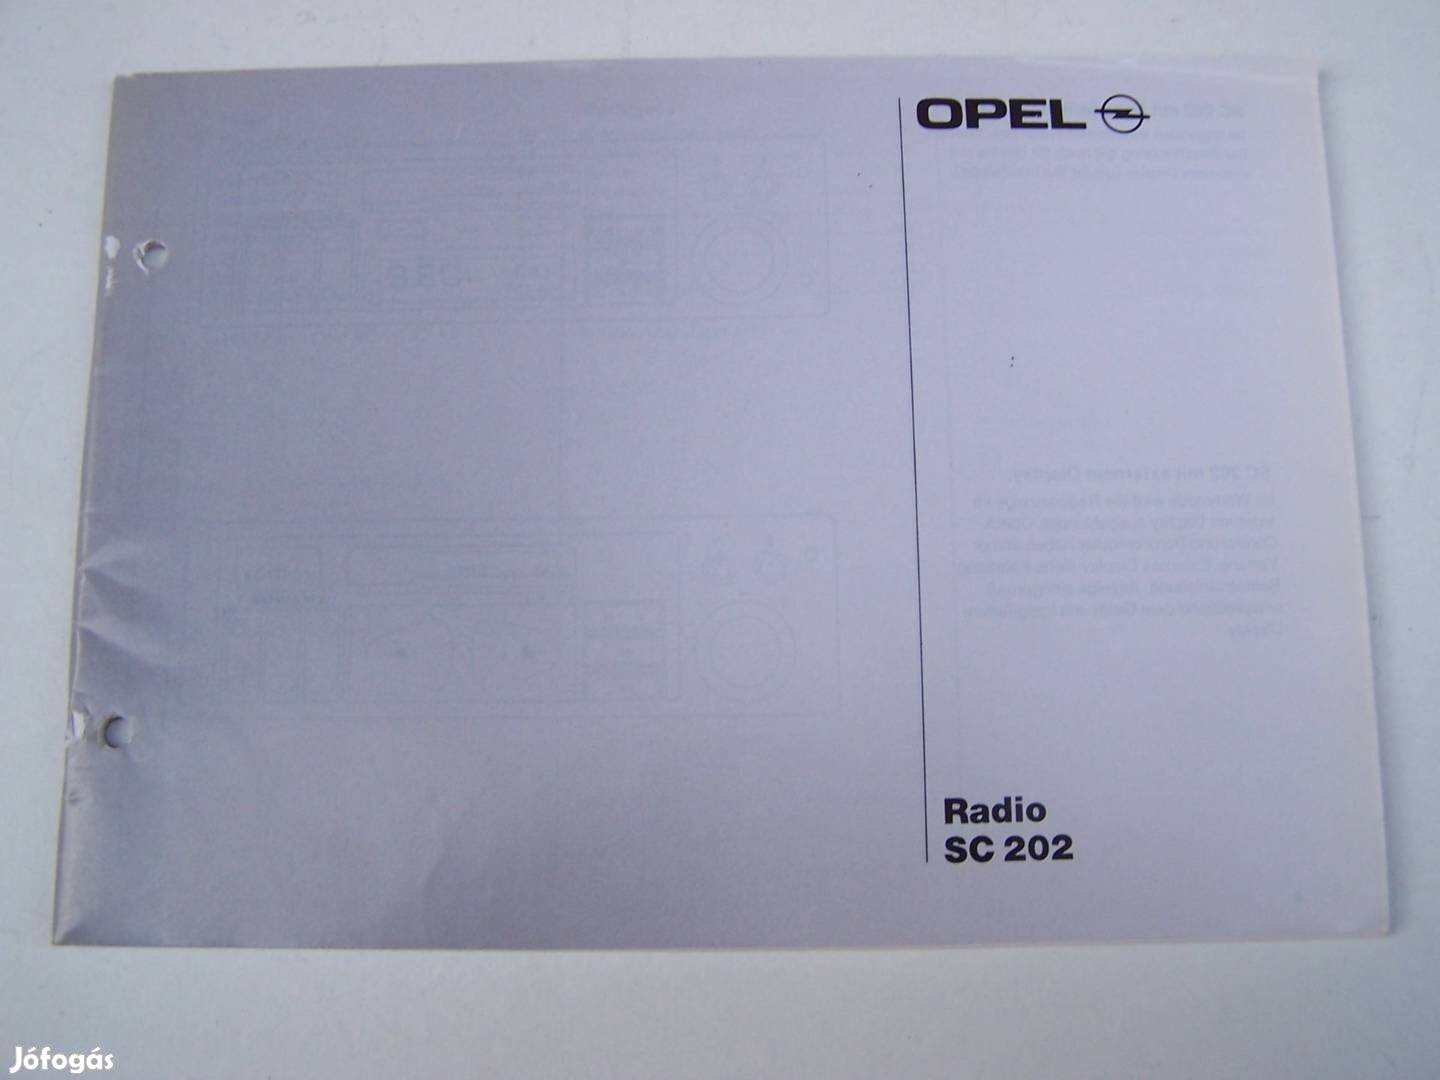 Opel Astra SC 202 rádió kezelési utmutató retró termék